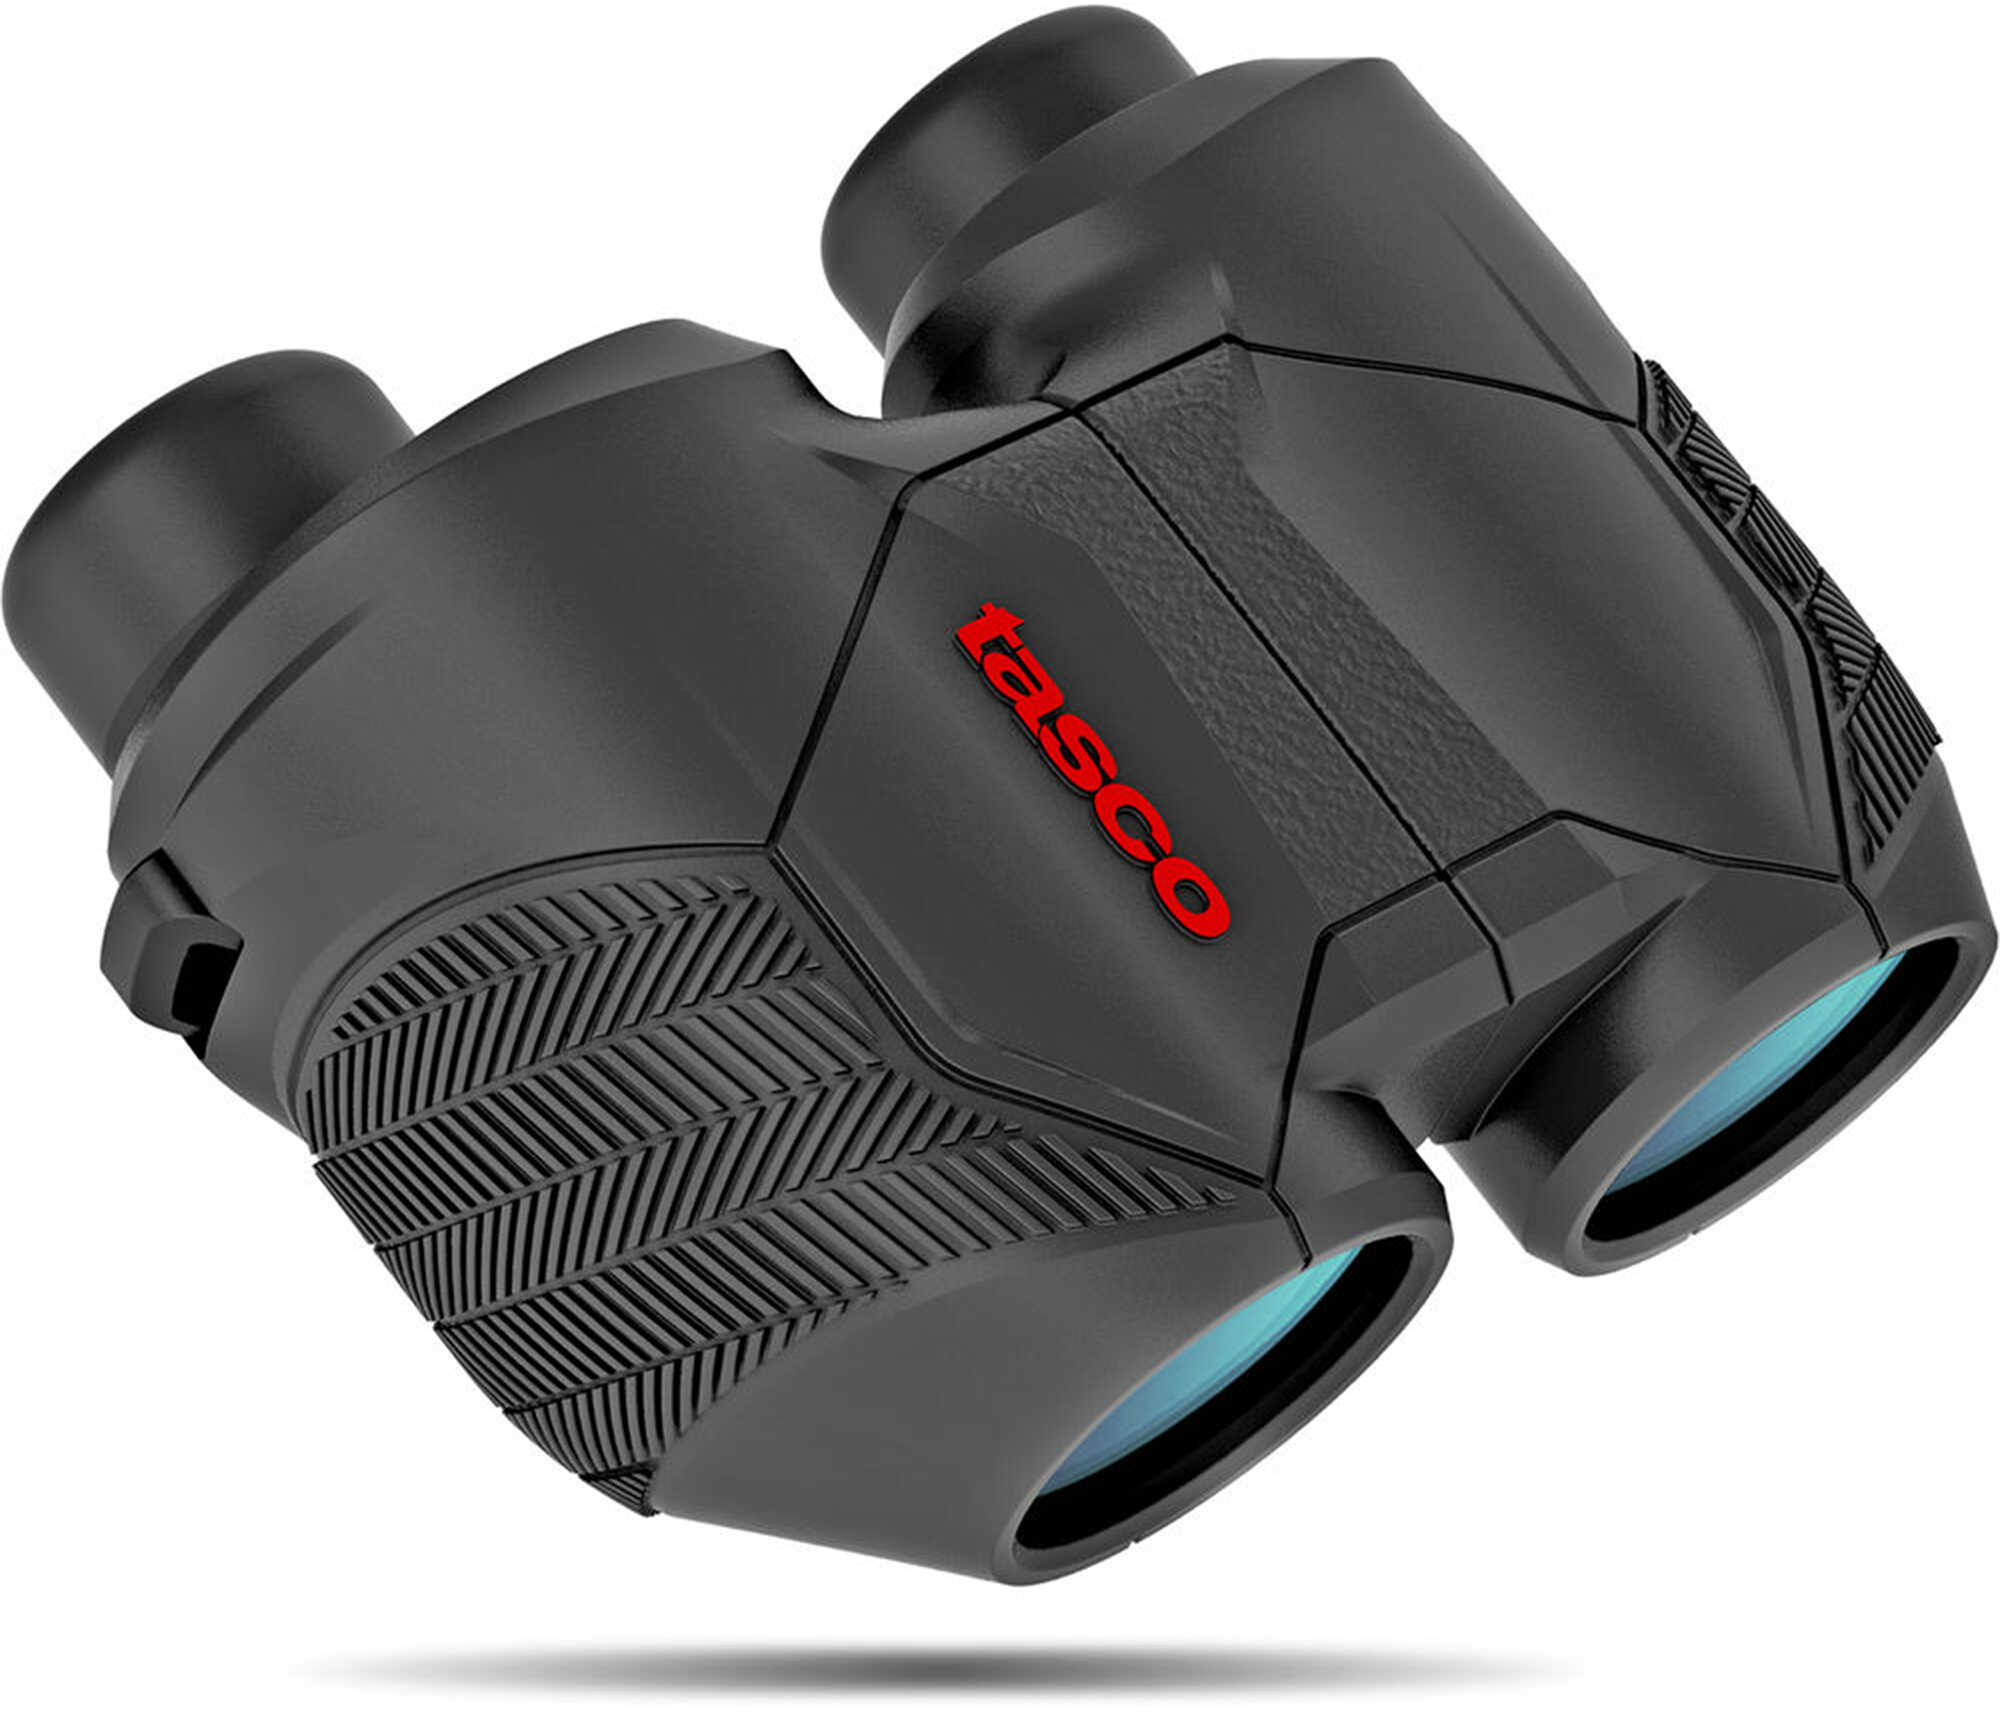 Tasco Focus Free Binocular 8x25mm Black Porro Box 6L